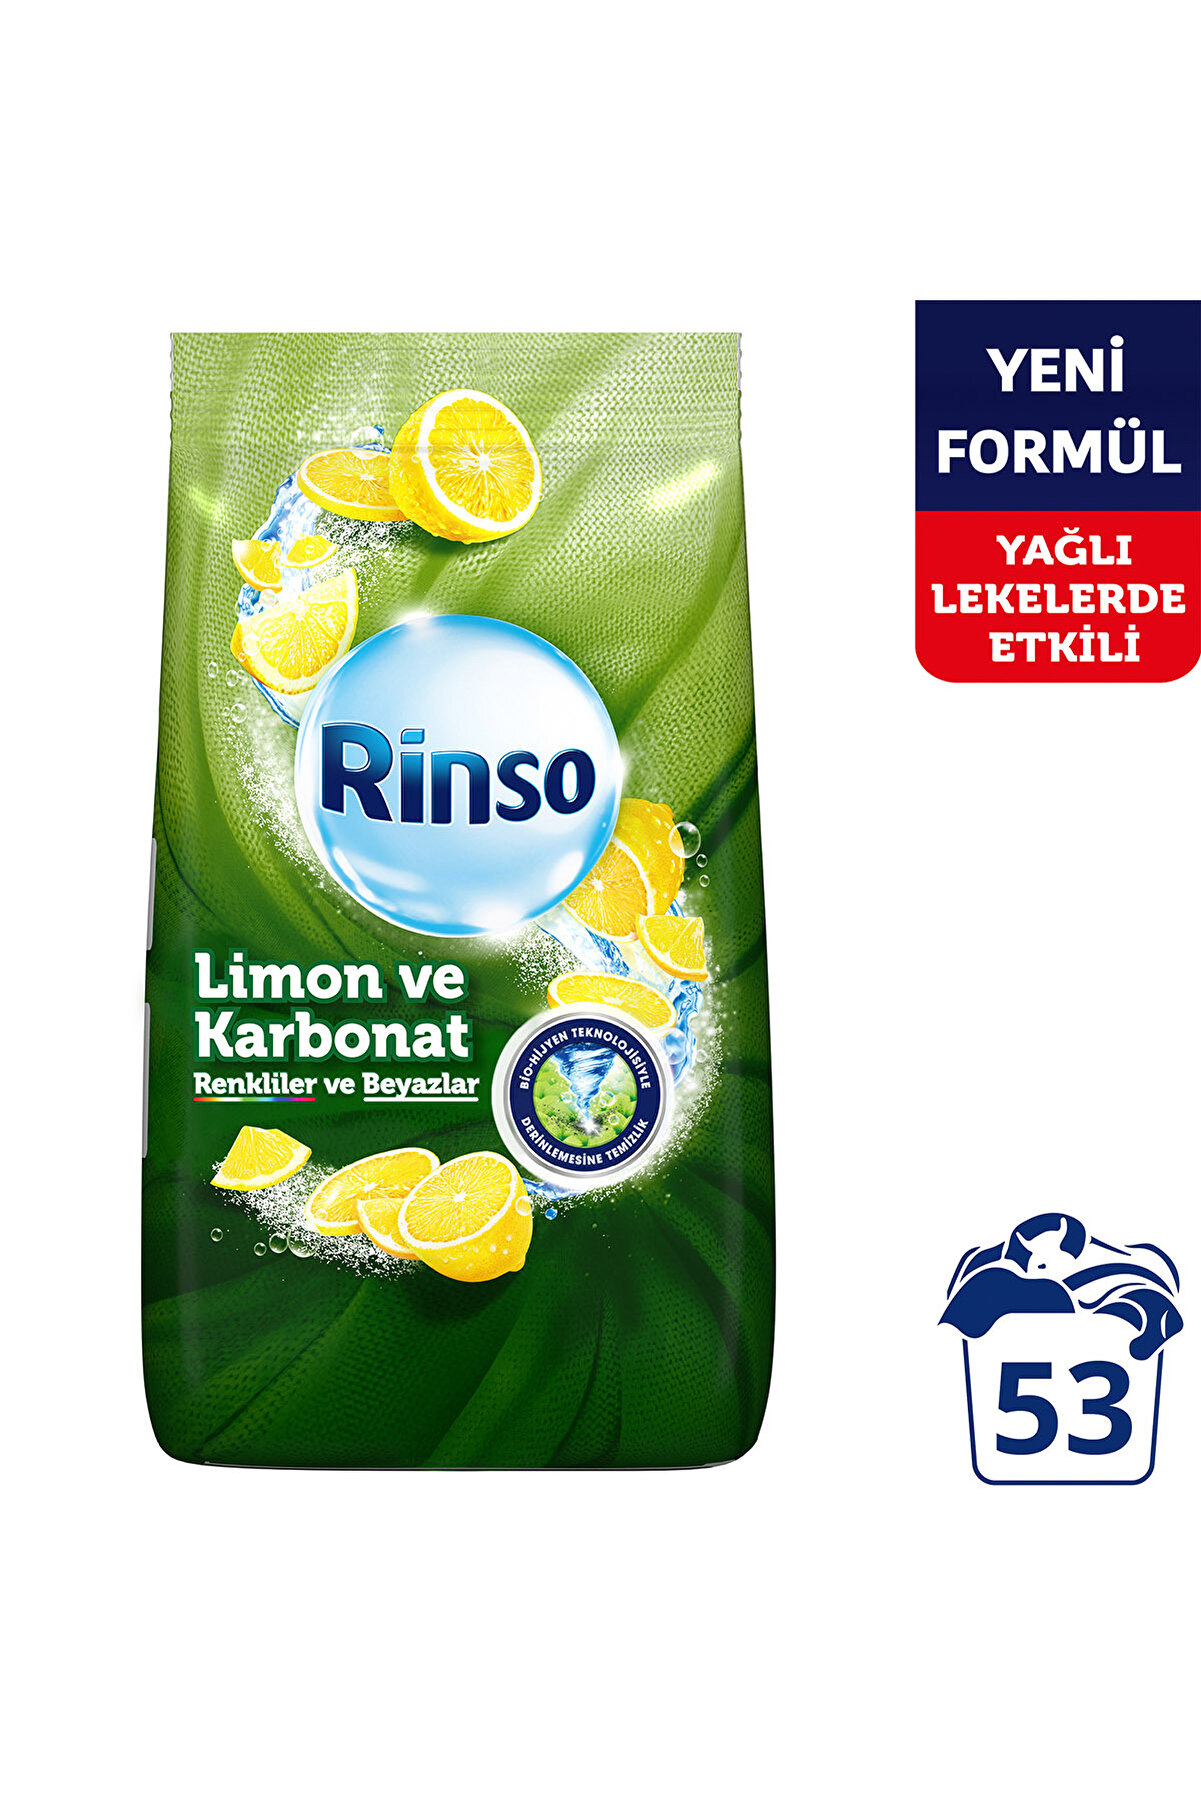 Rinso Toz Deterjan Limon Karbonat Renkliler Ve Beyazlar Için Derinlemesine Temizlik 8 Kg